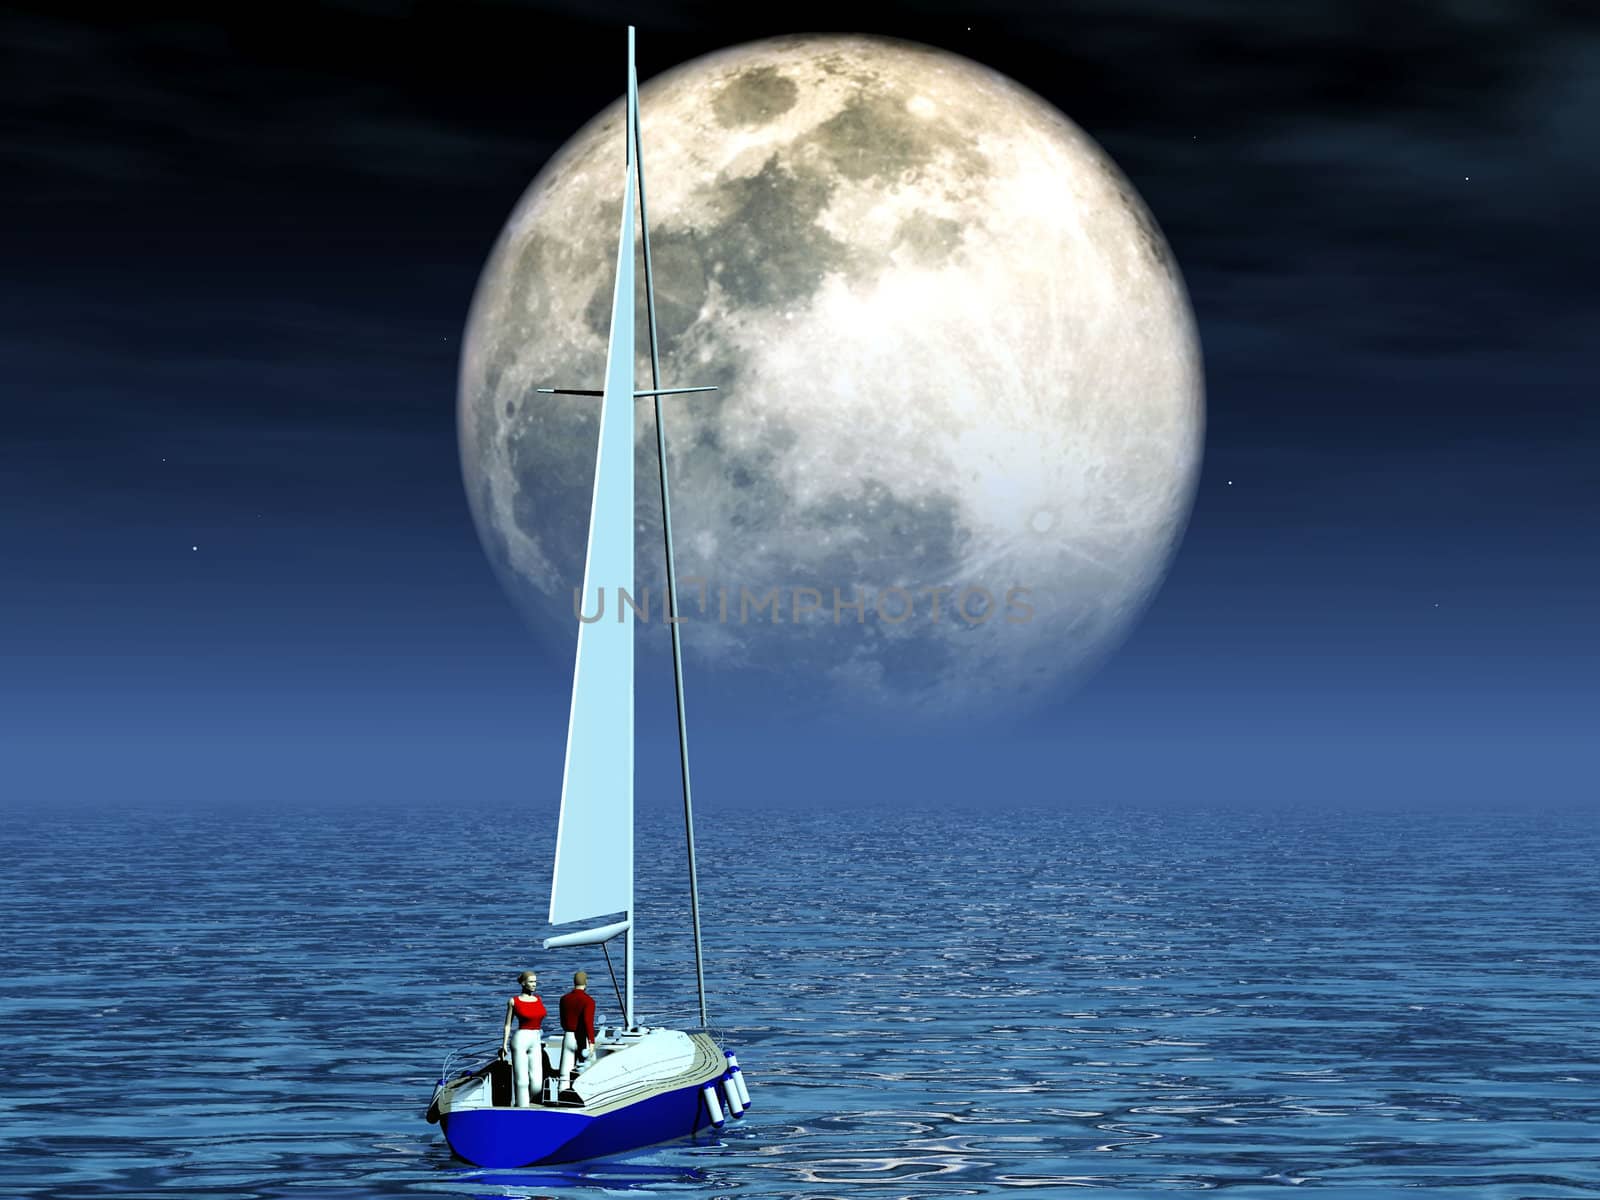 sailboat and moon by njaj